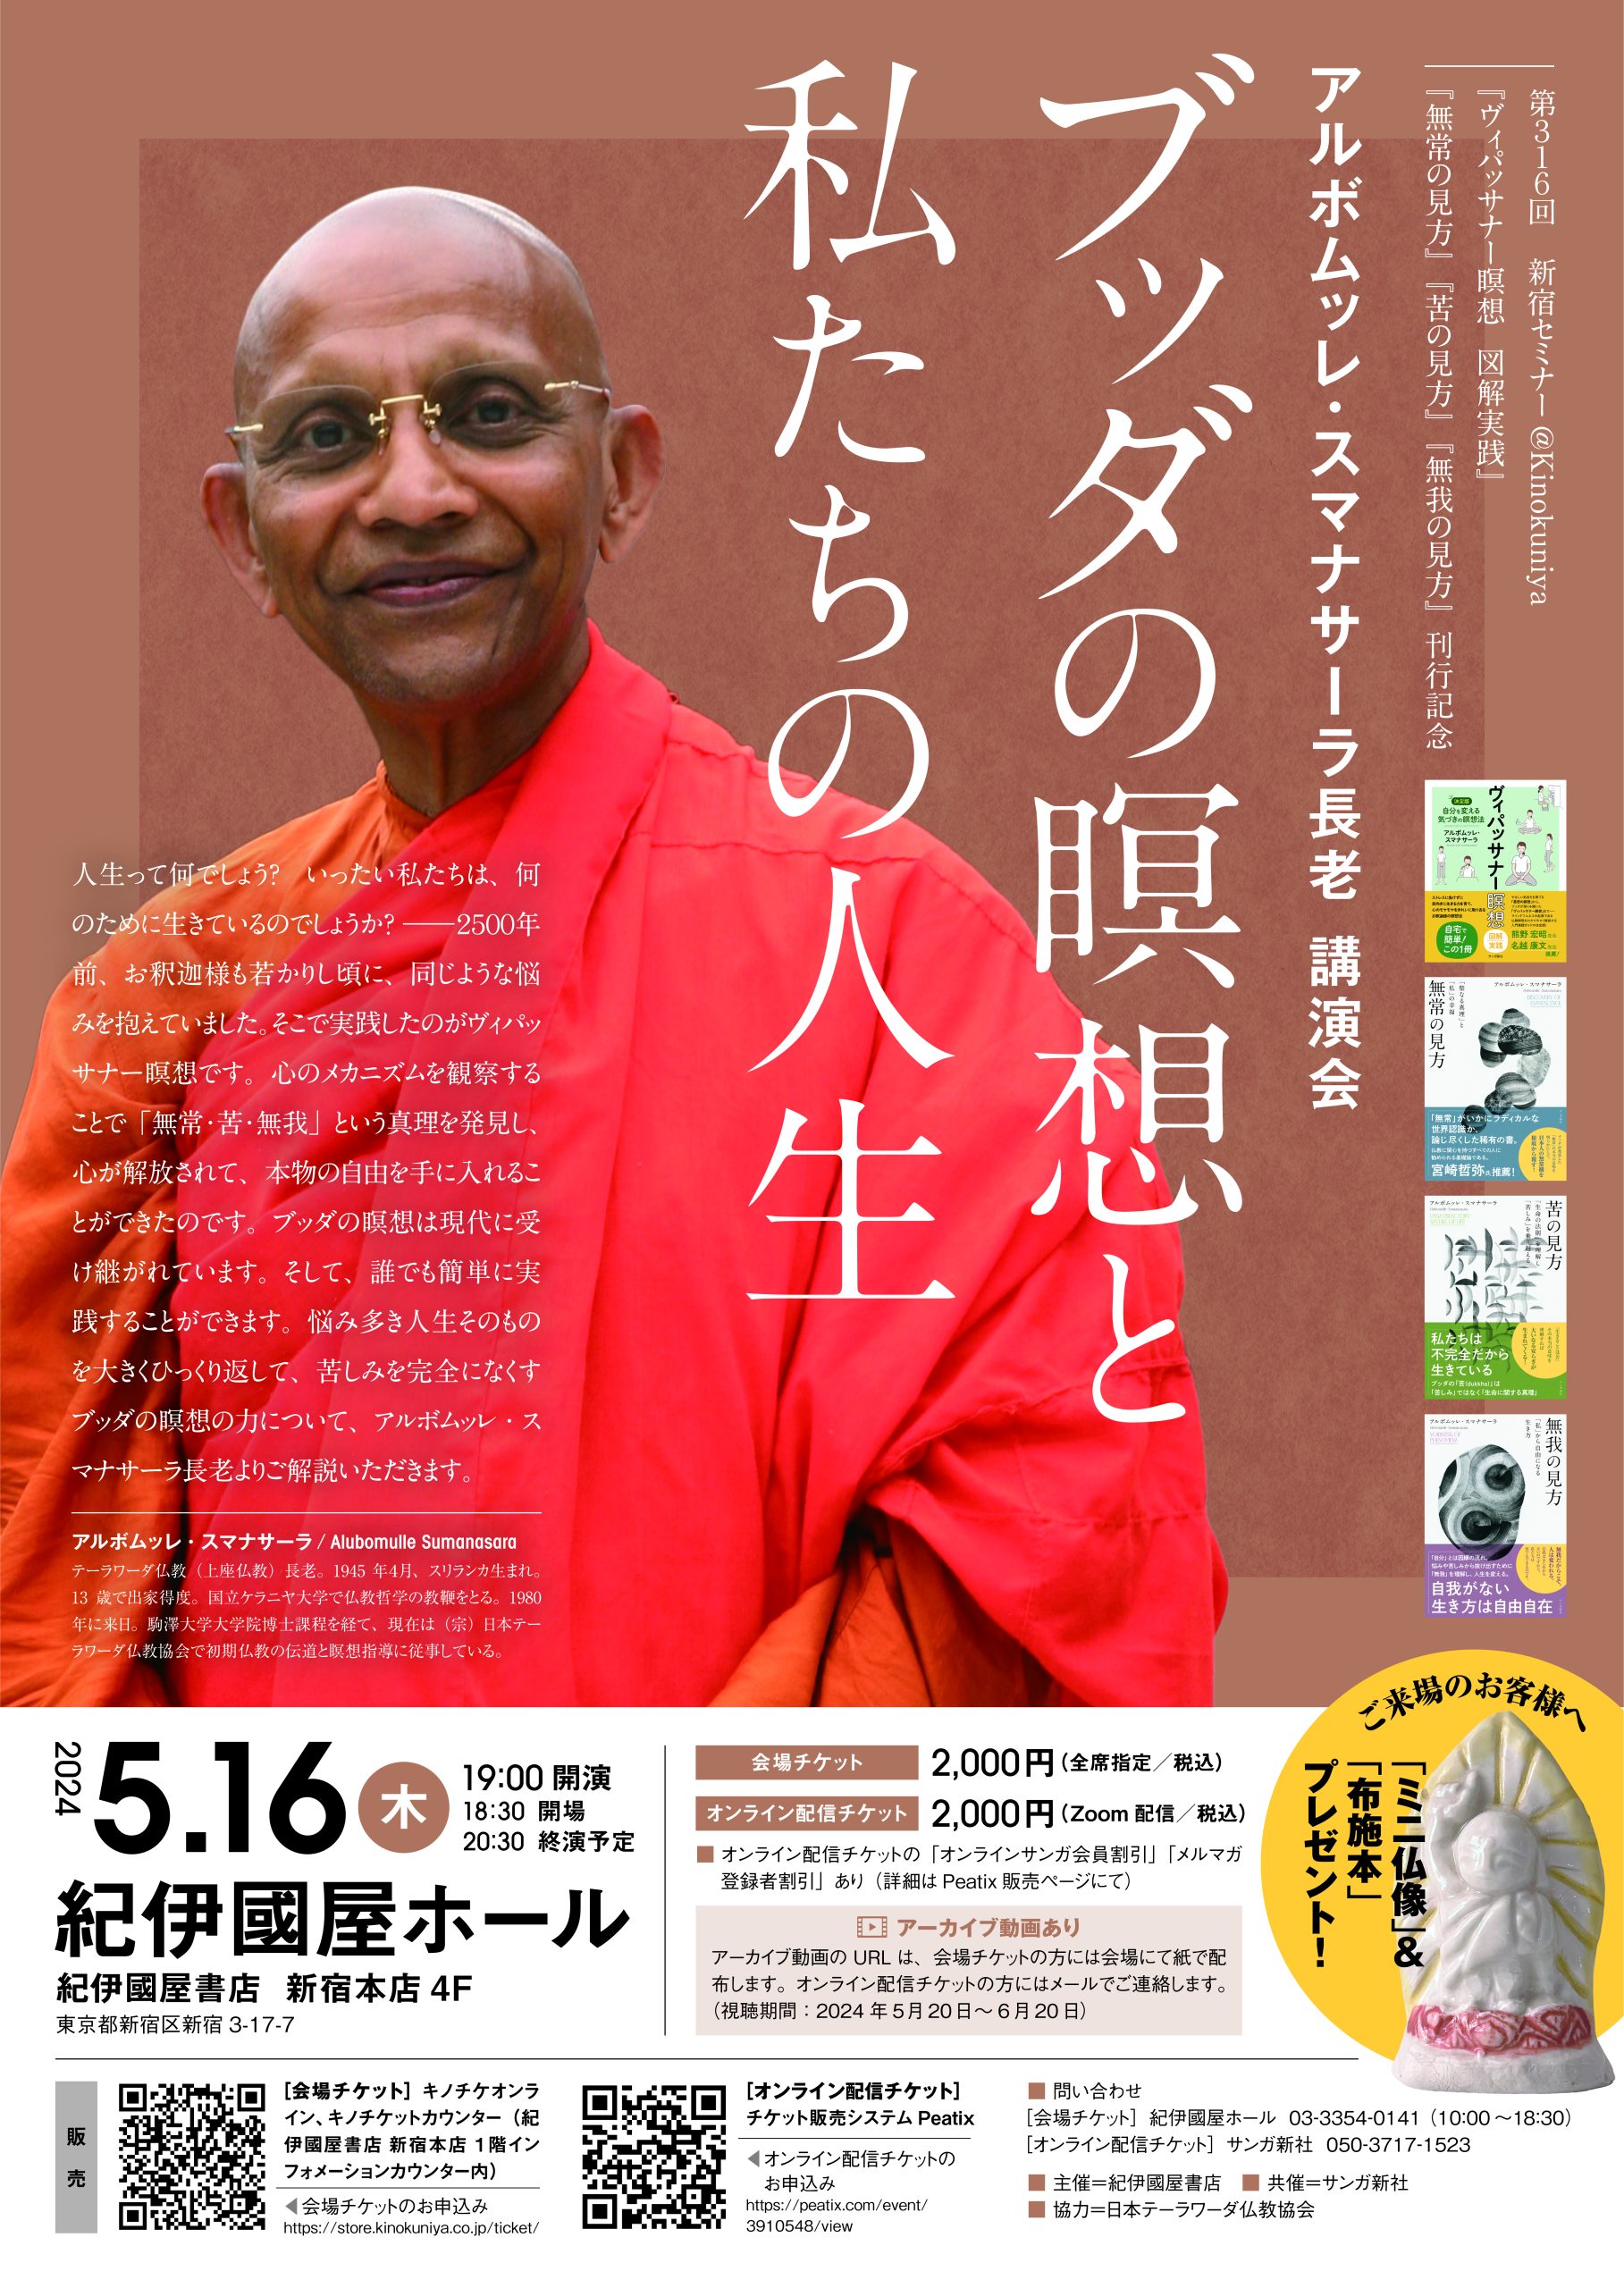 〈第316回新宿セミナー@Kinokuniya〉 『ヴィパッサナー瞑想 図解実践』『無常の見方』『苦の見方』『無我の見方』刊行記念  アルボムッレ・スマナサーラ長老 講演会  ブッダの瞑想と私たちの人生